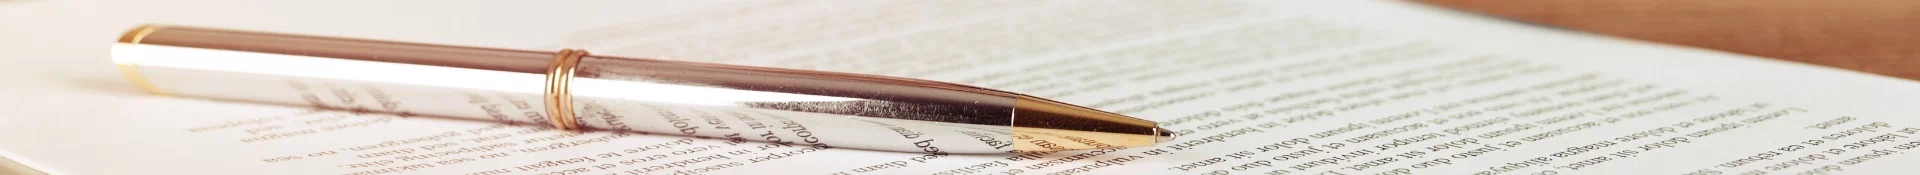 Długopis leżacy na dokumentach